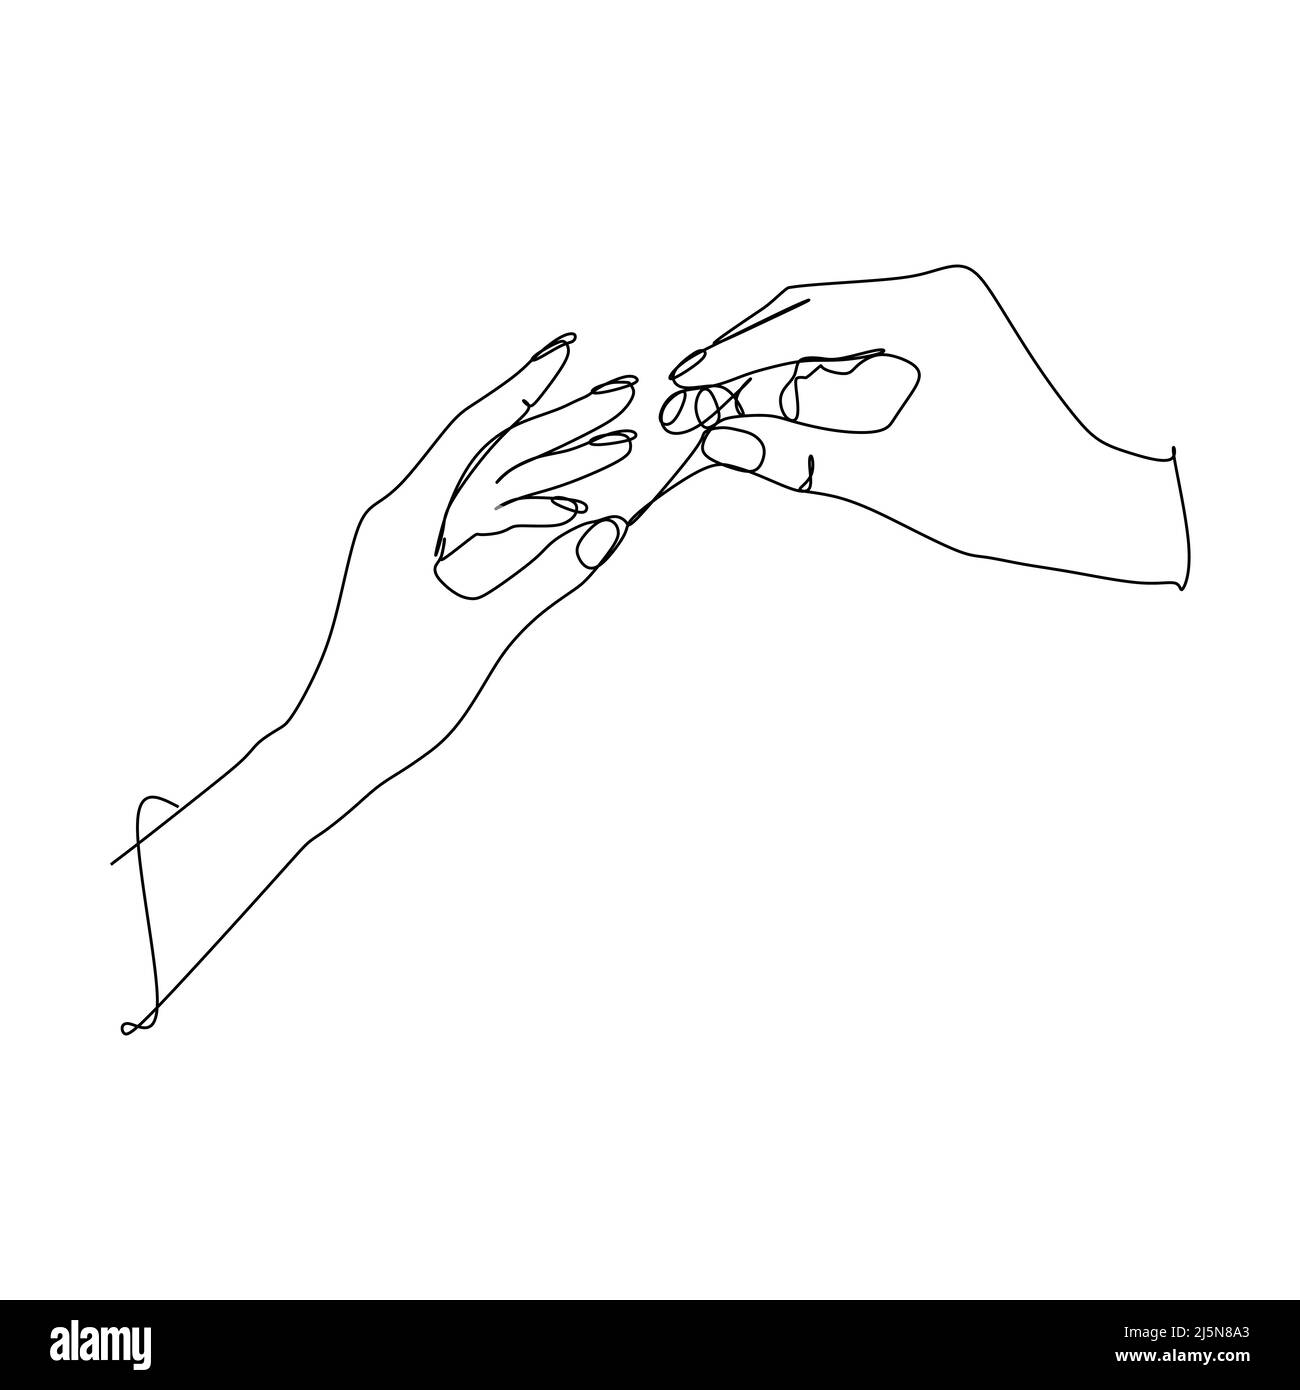 Vektorgrafik für die fortlaufende Linienführung. Zeichen und Symbol der Handgesten. Einzelne fortlaufende Zeichnungslinie. Handgezeichnete Kunst Doodle Isolate Stock Vektor